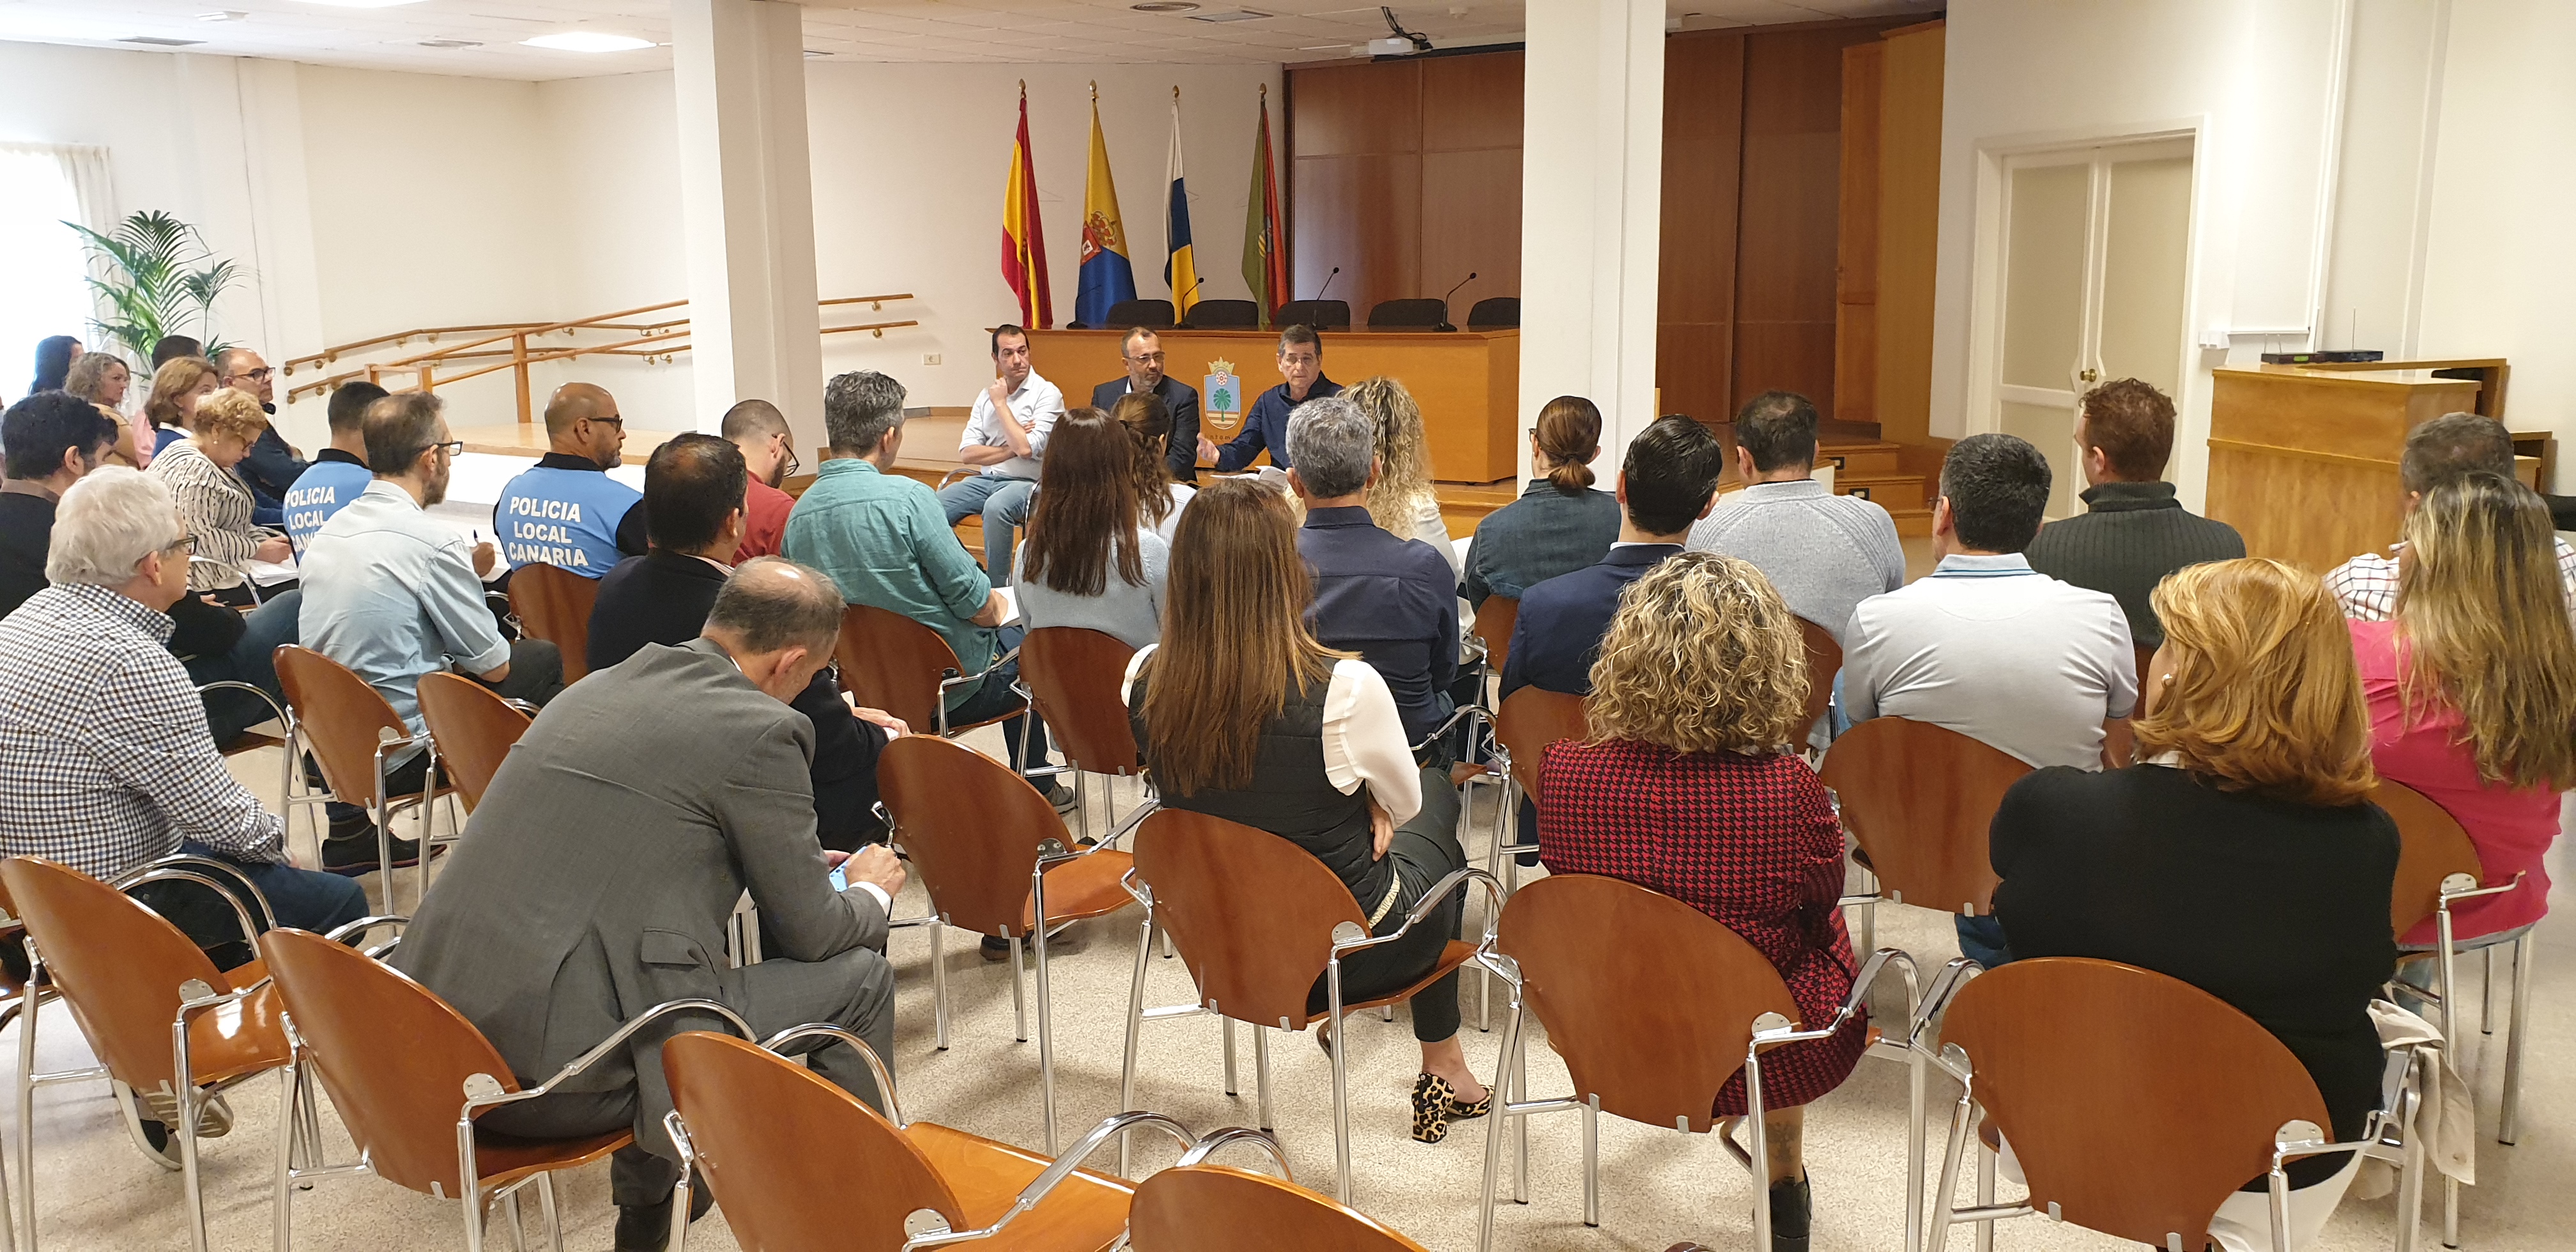  El alcalde de Santa Lucía agradece la colaboración de la población en la aplicación de las medidas para frenar el COVID-19